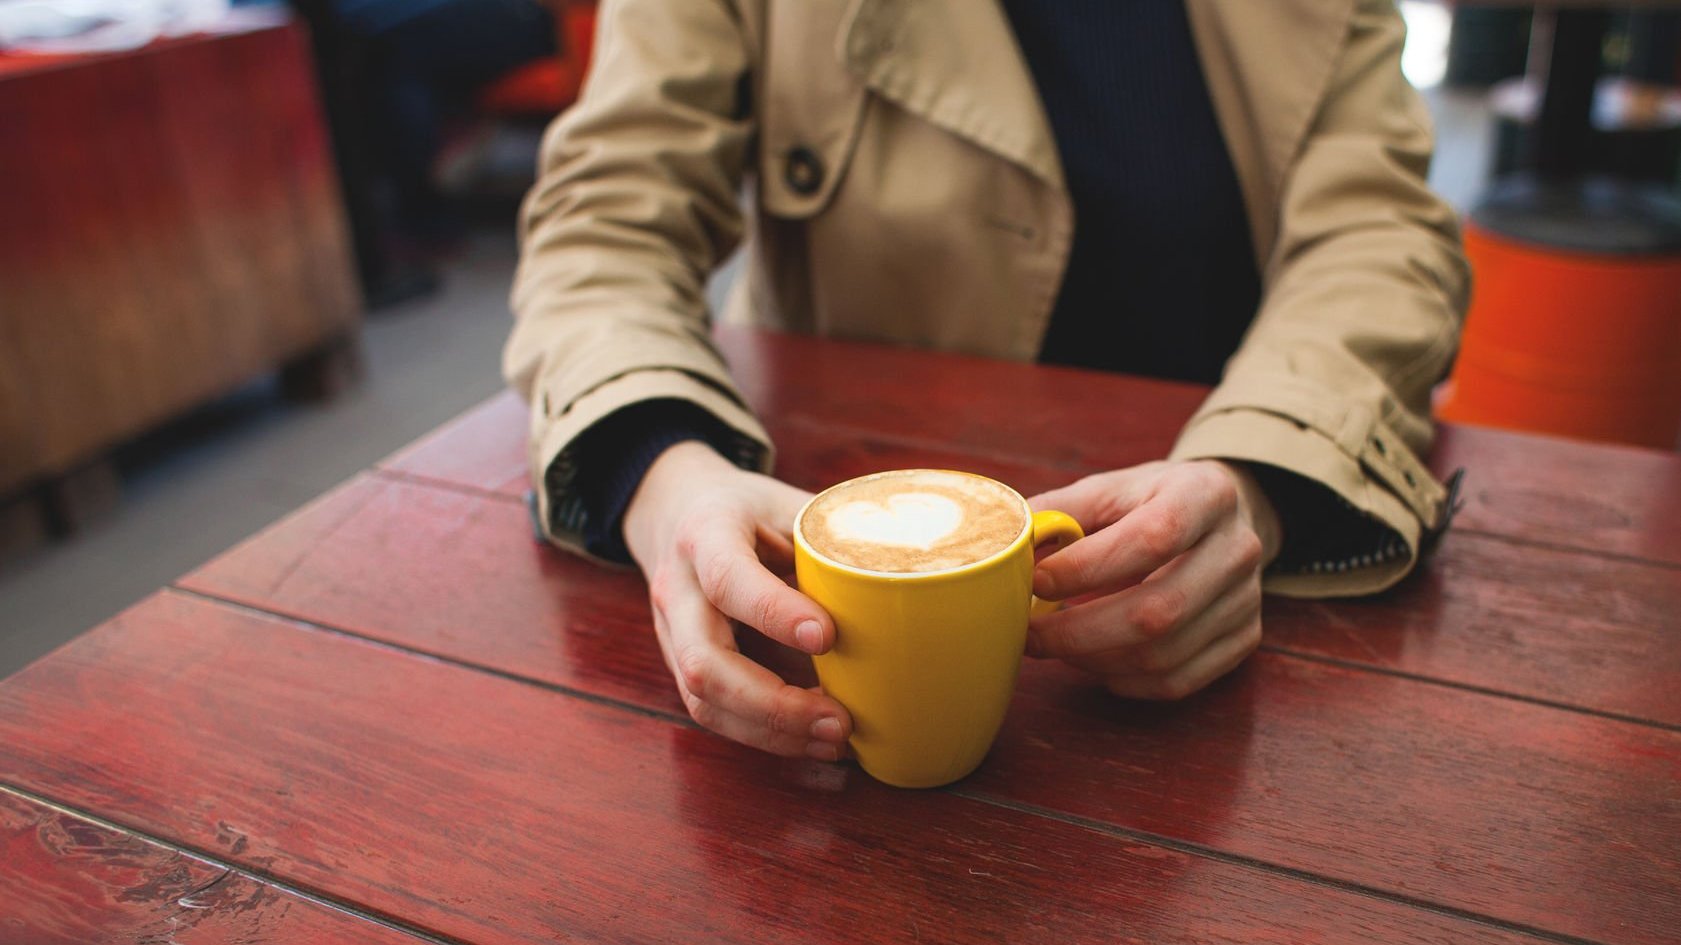 Pessoa vestindo casaco, sentada, apoiando os braços em uma mesa enquanto segura uma caneca com café com leite, e espuma em formato de coração.